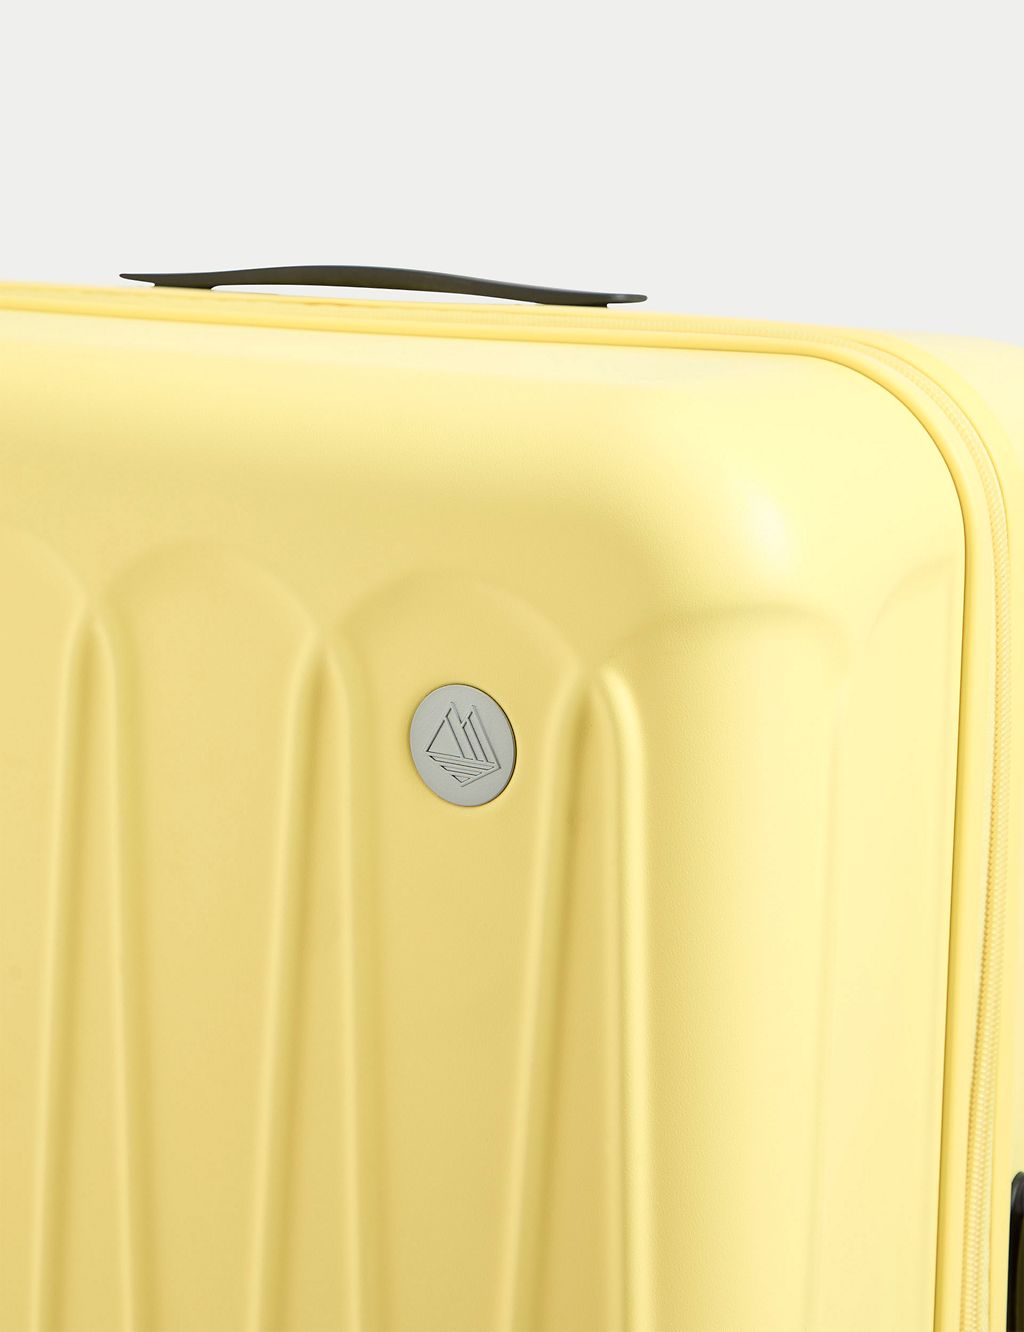 Amalfi 4 Wheel Hard Shell Large Suitcase 7 of 10